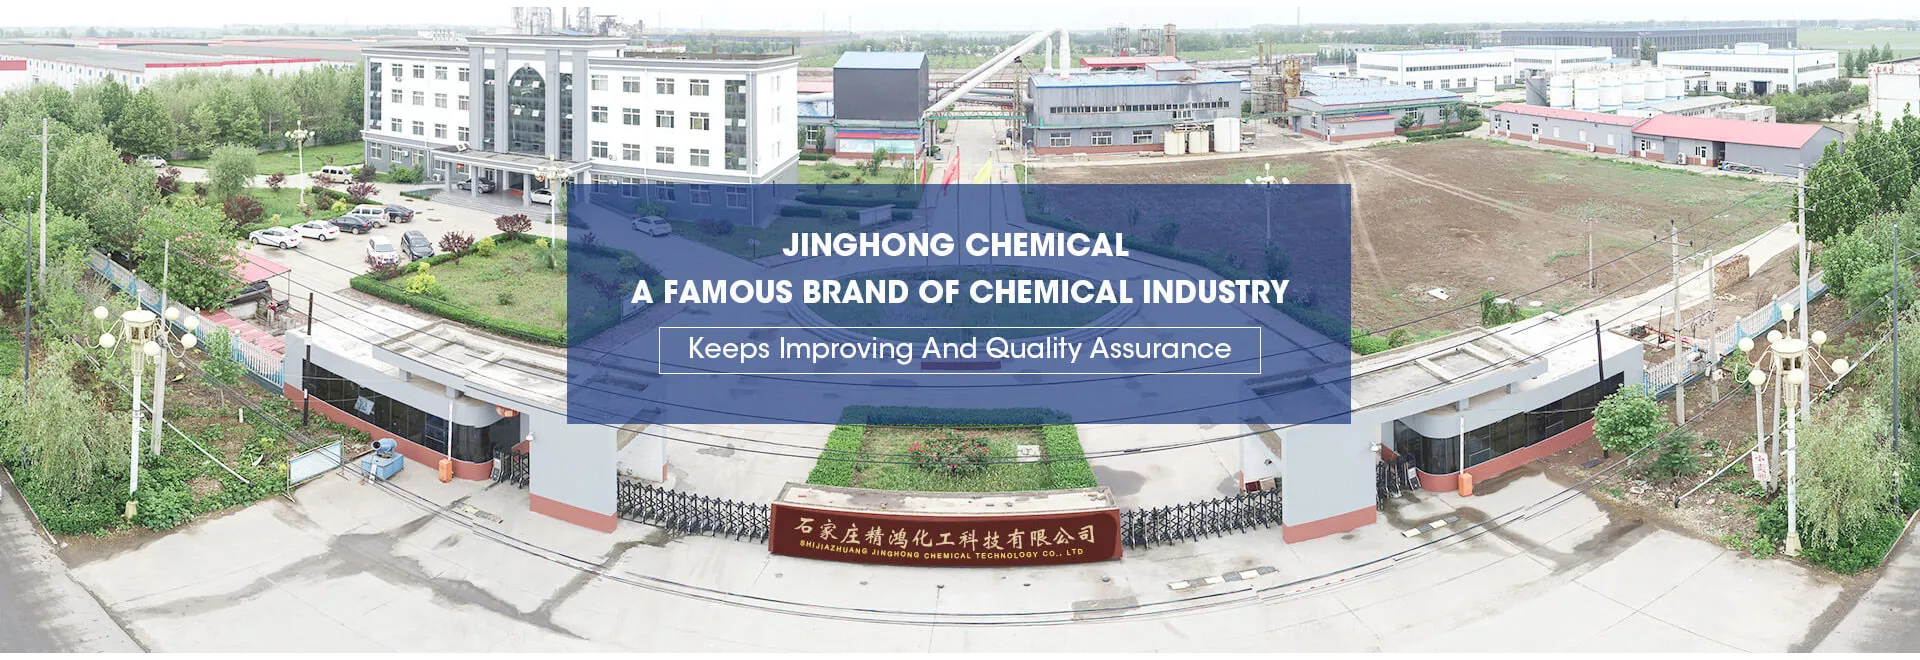 ฉือเจียจวงจินแห้งแดงเคมีเทคโนโลยี co., Ltd.